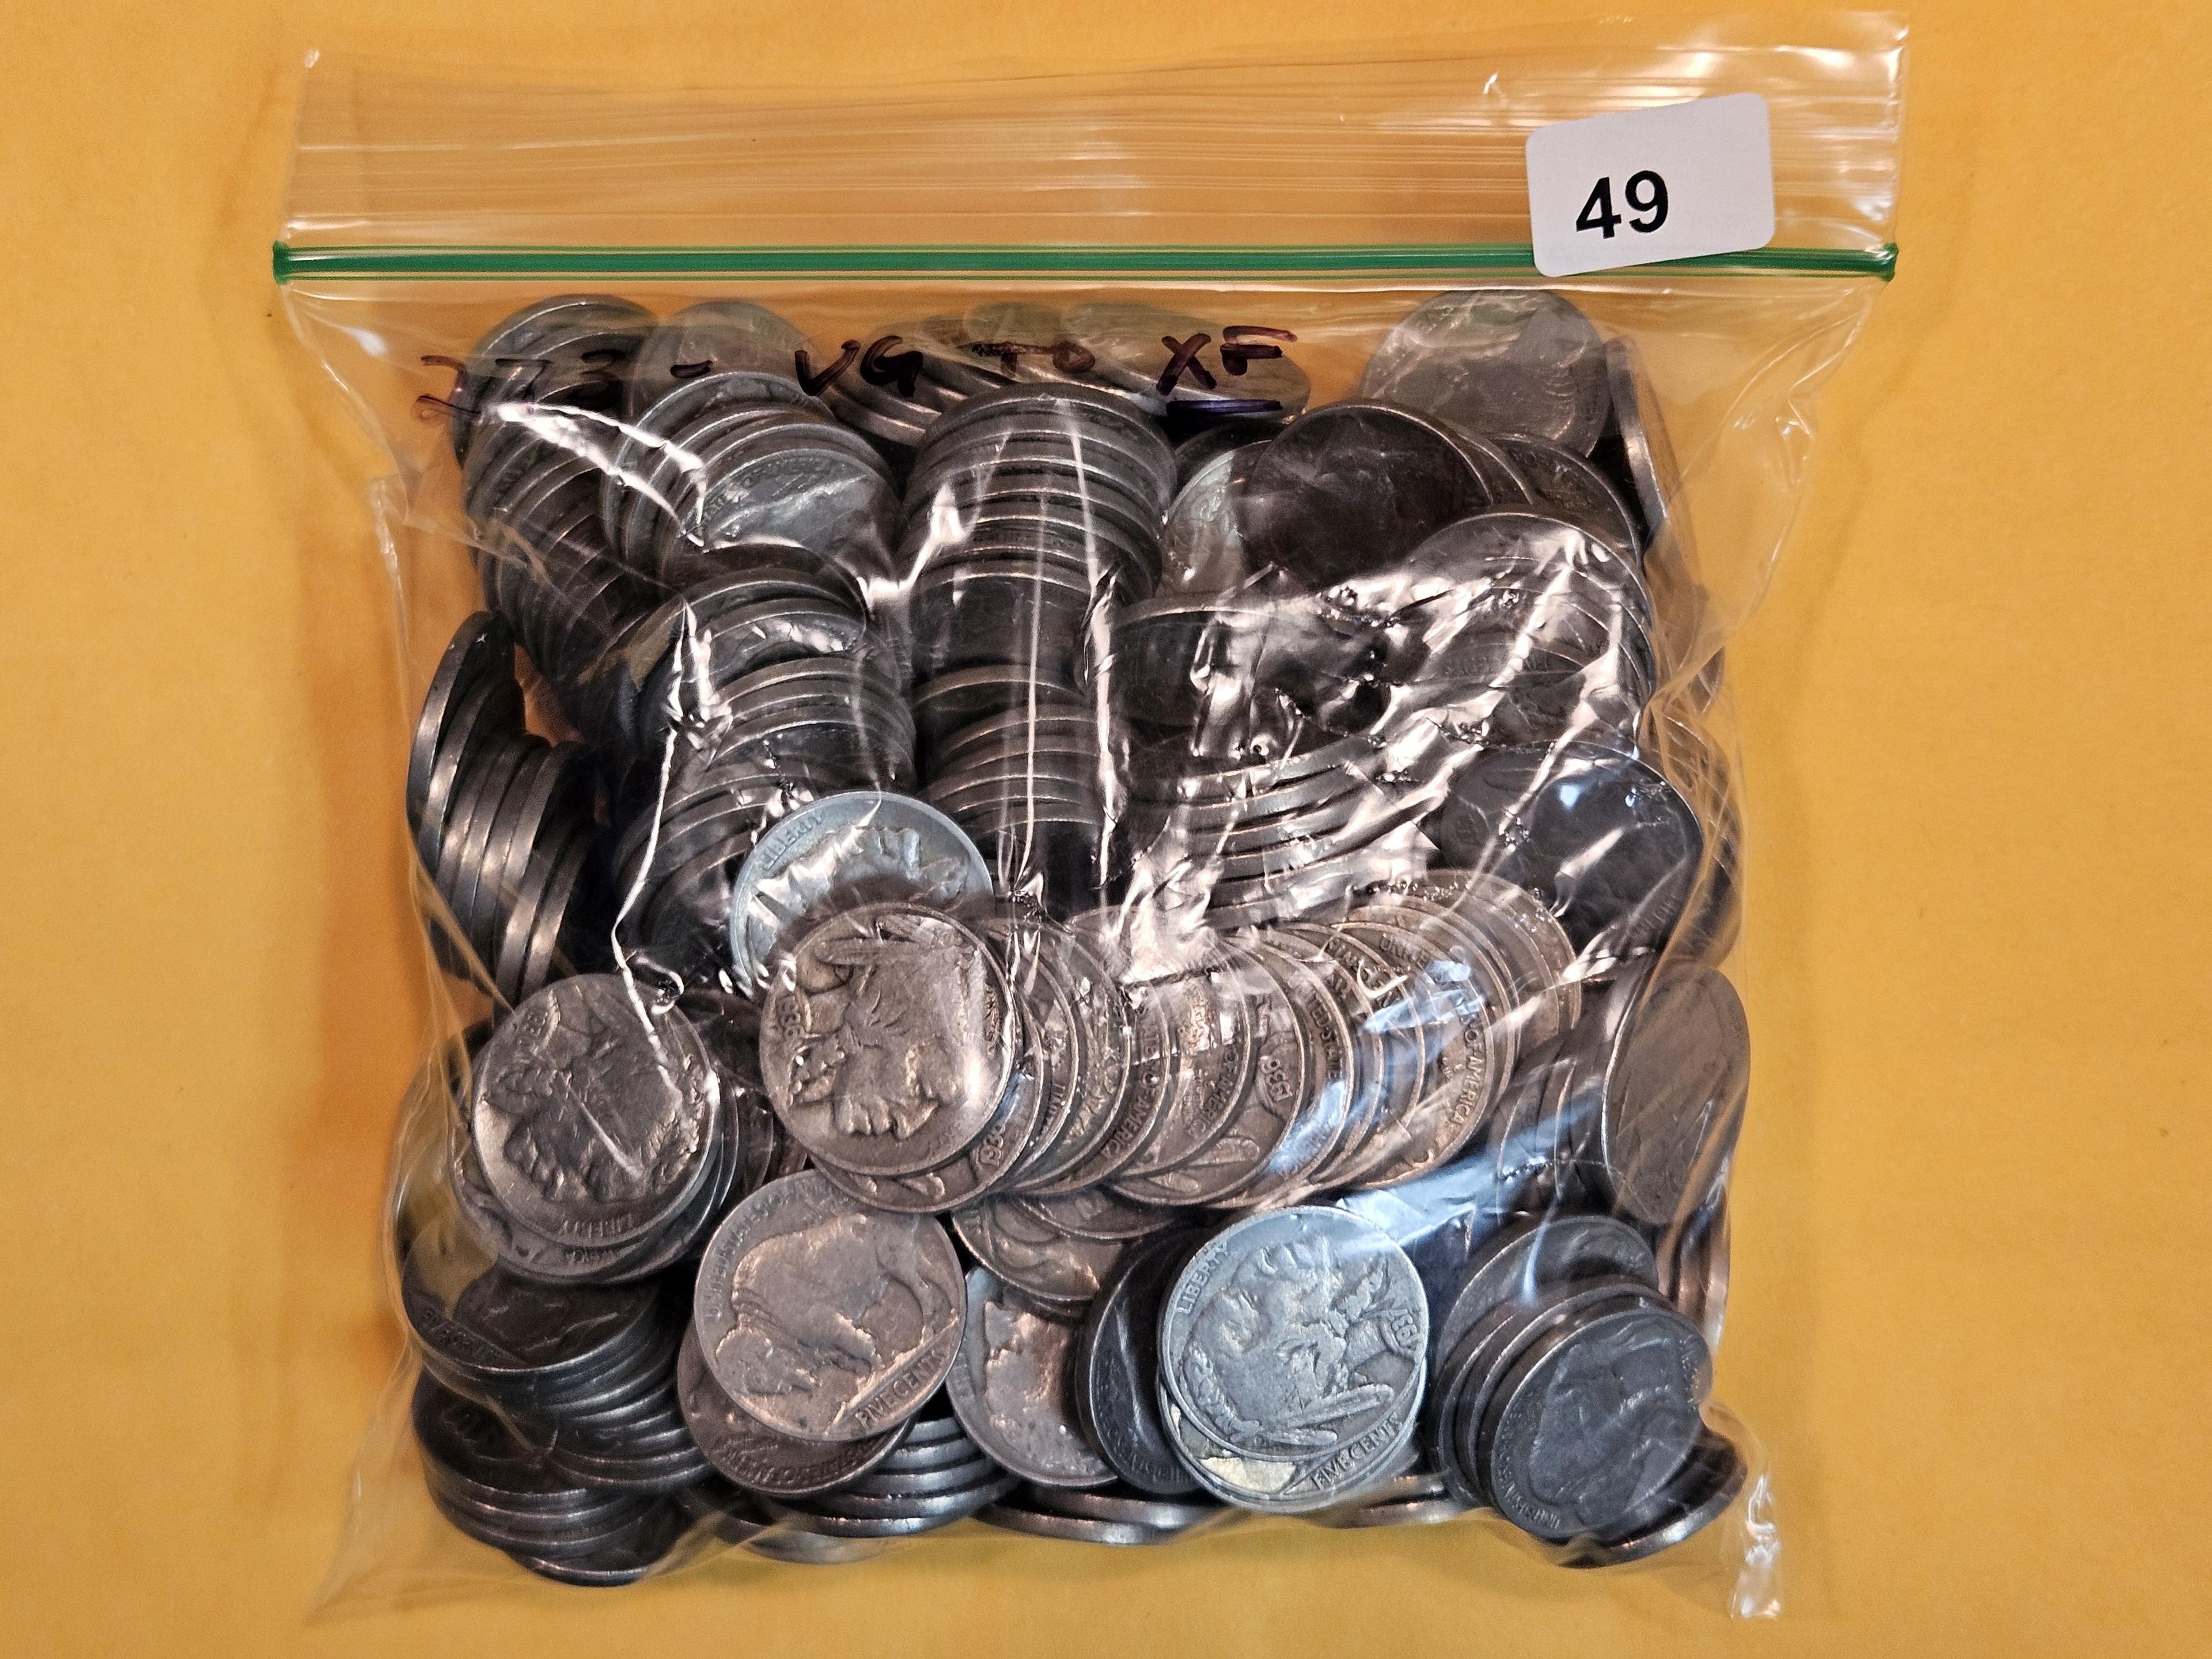 Two hundred seventy-three Buffalo Nickels